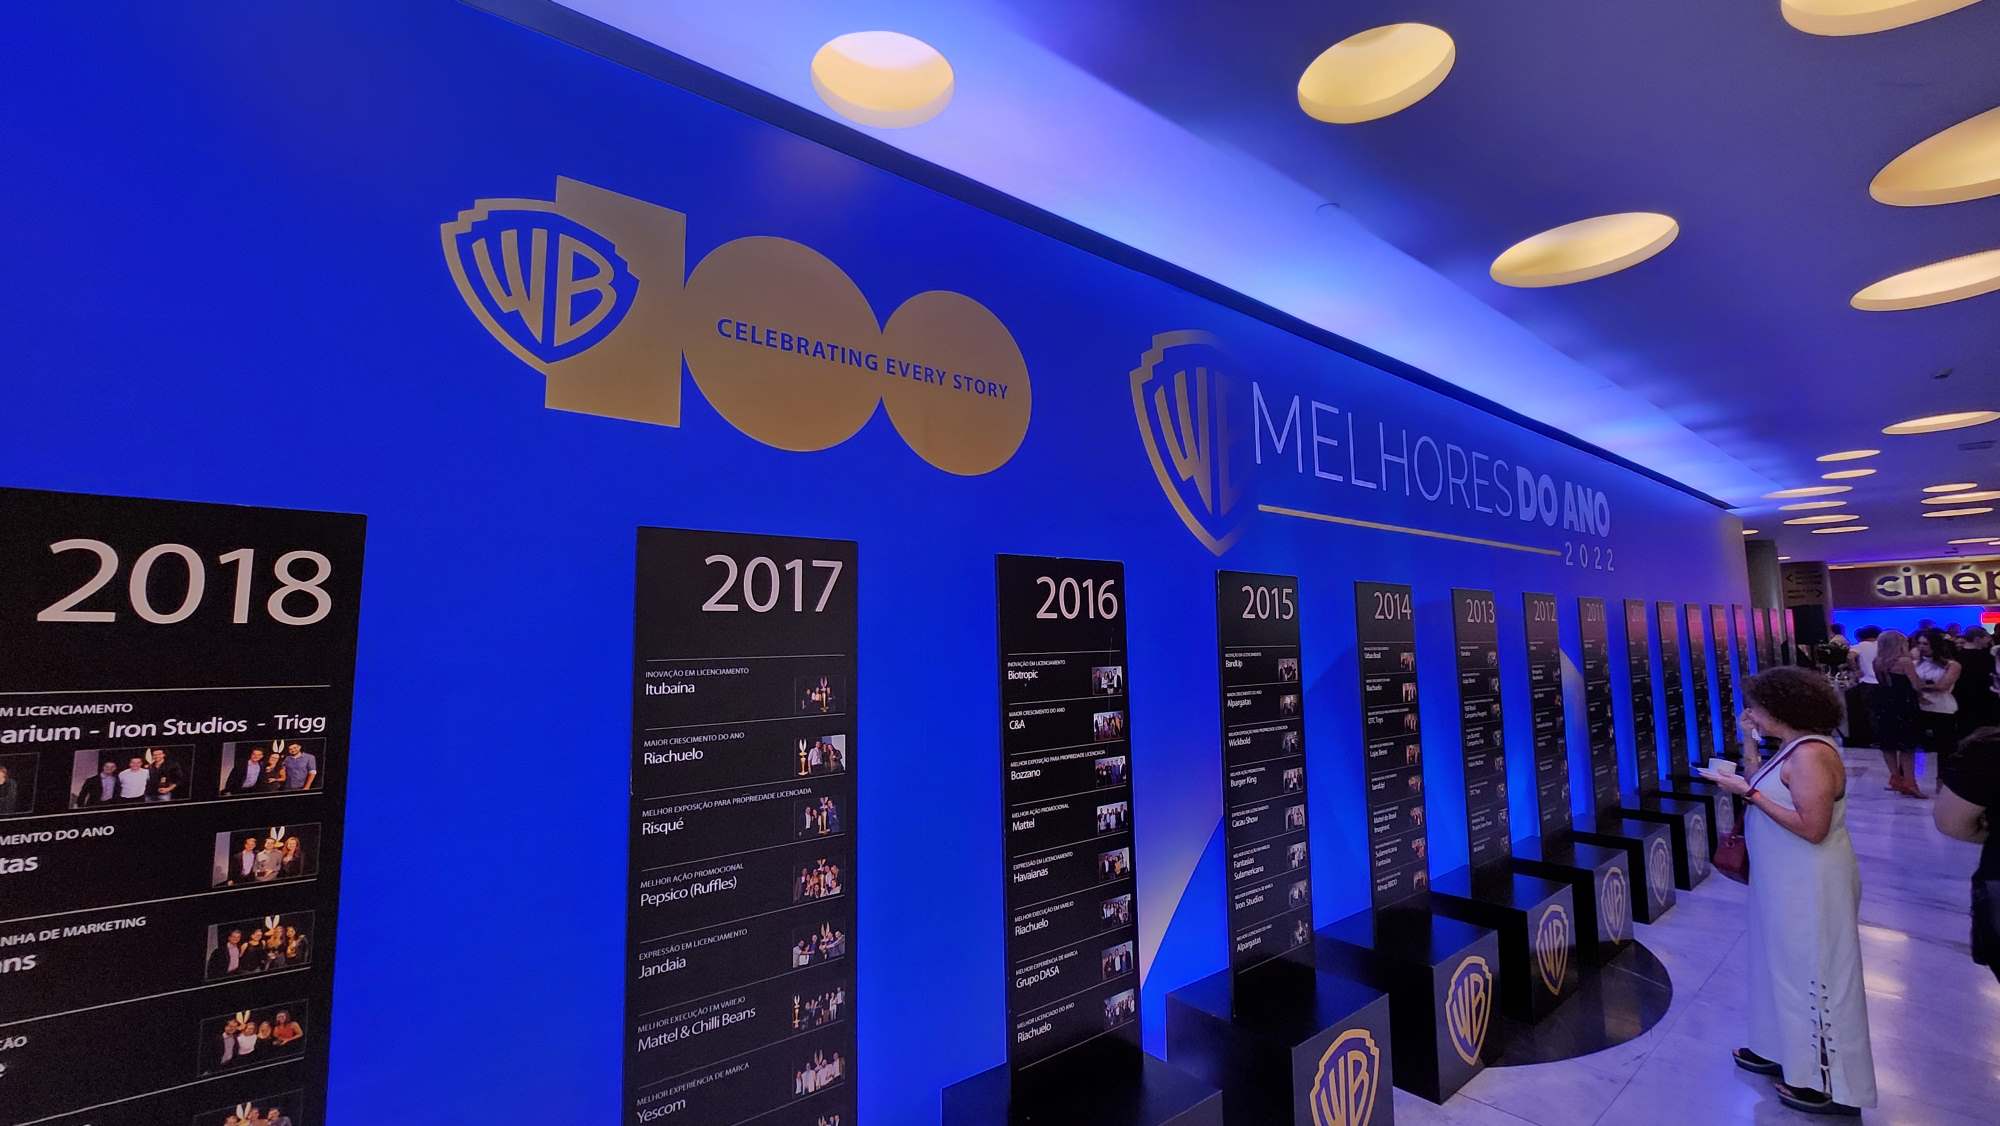 Warner Bros. Games ganha prêmio no The Game Awards 2022 com Multiversus -  Cidades - R7 Folha Vitória